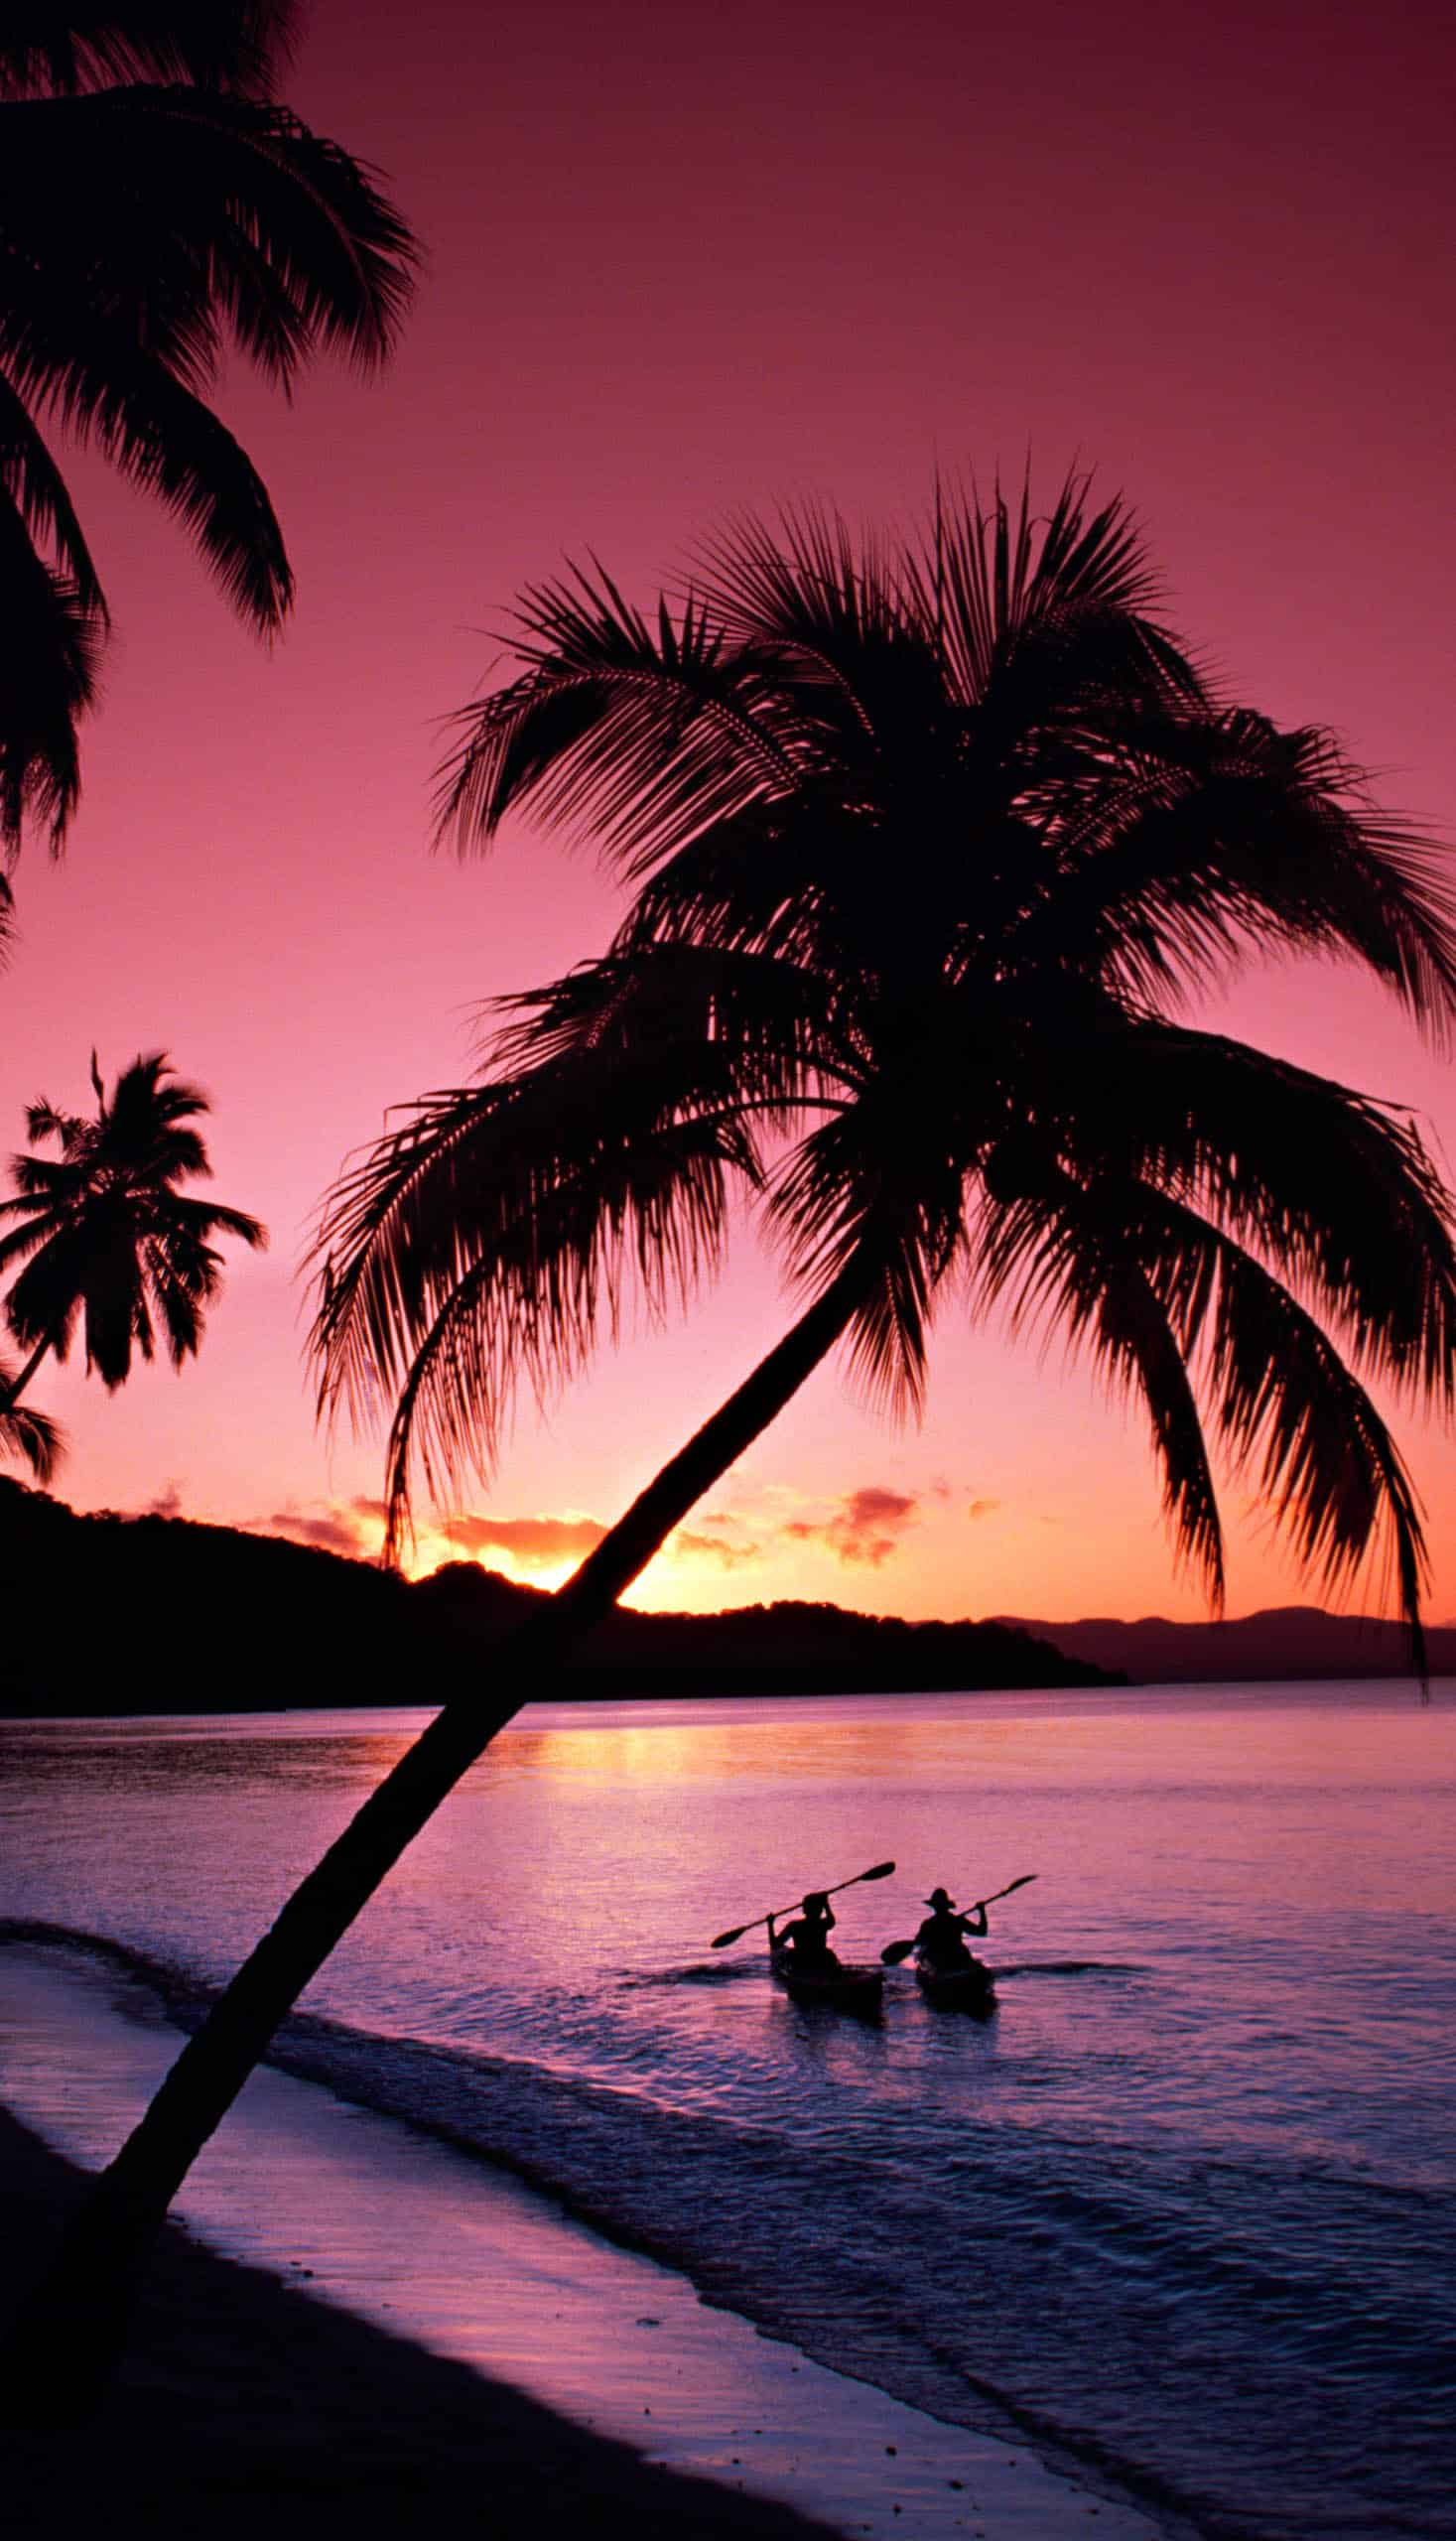 A beach at sunset in Fiji.